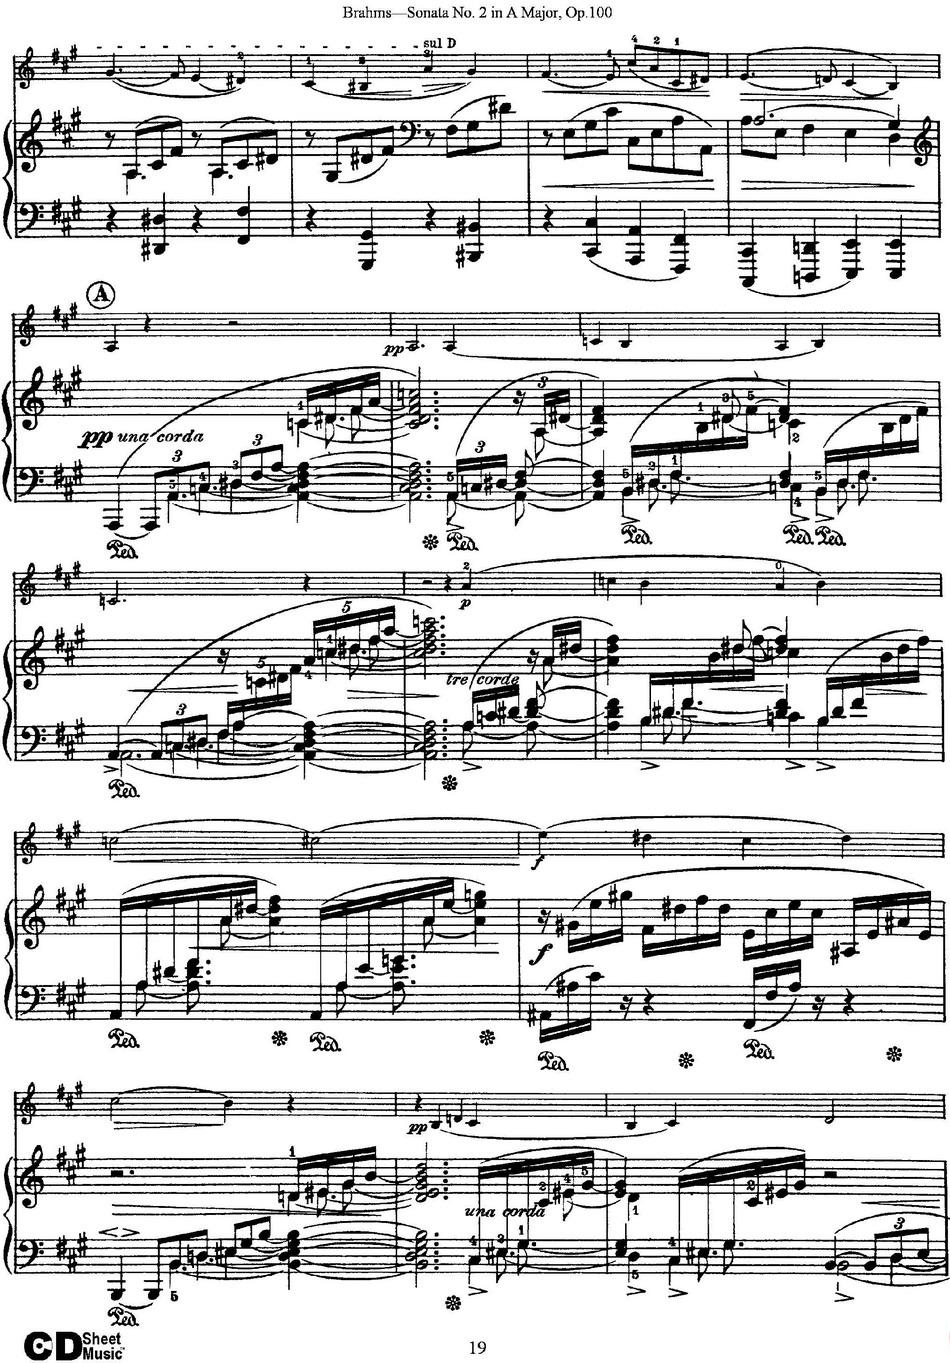 Violin Sonata No.2 in A Major Op.100（小提琴+钢琴伴奏）